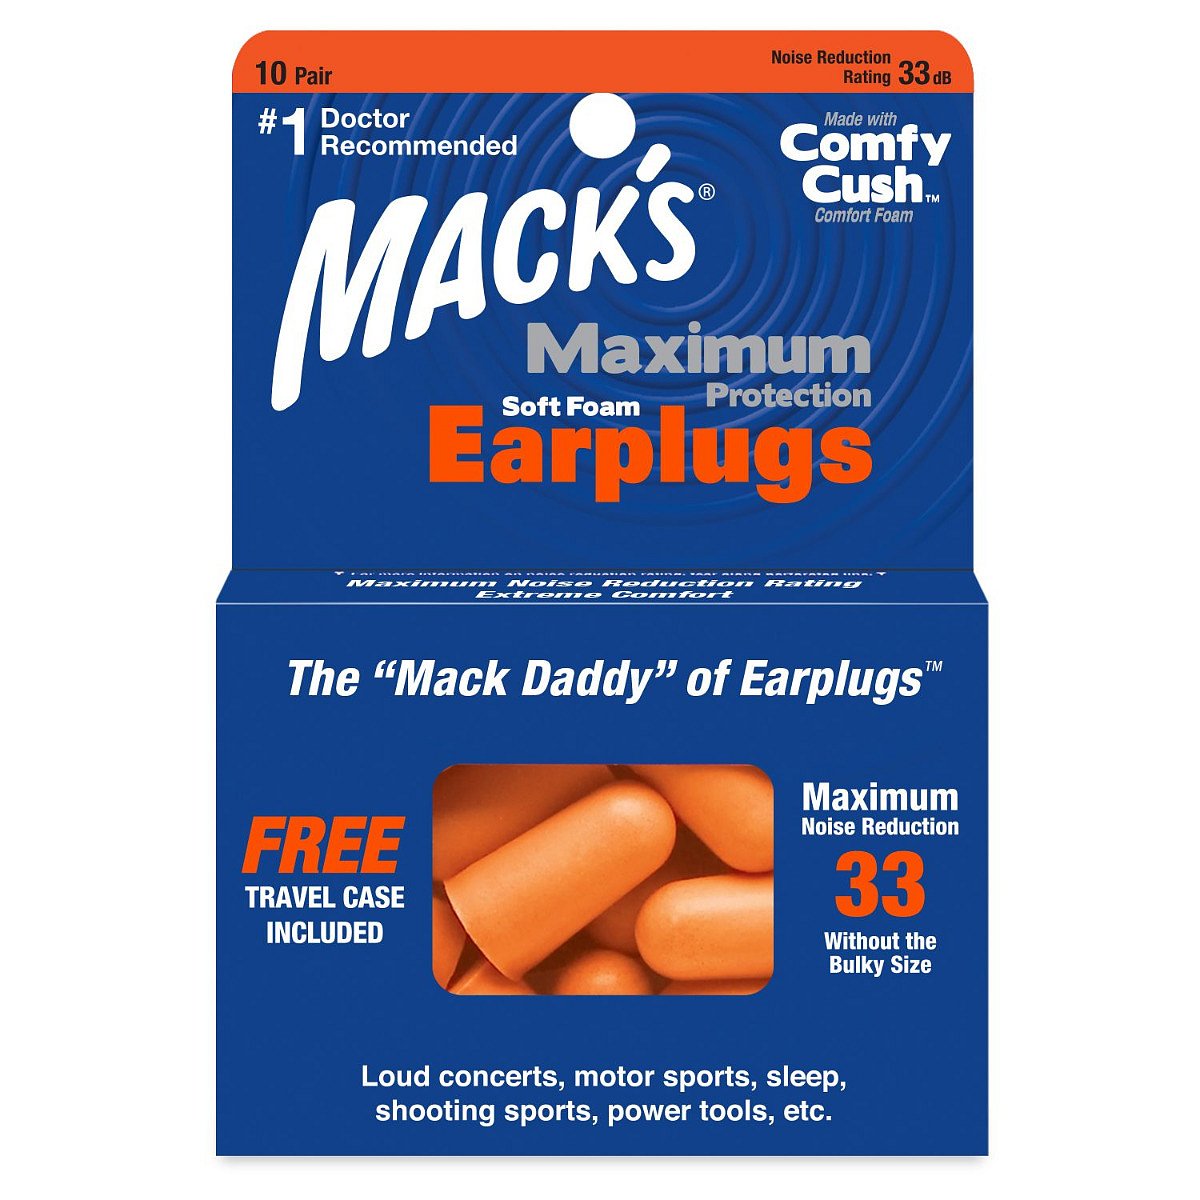 MACKS Maximum Protection špunty do uší 10 párů